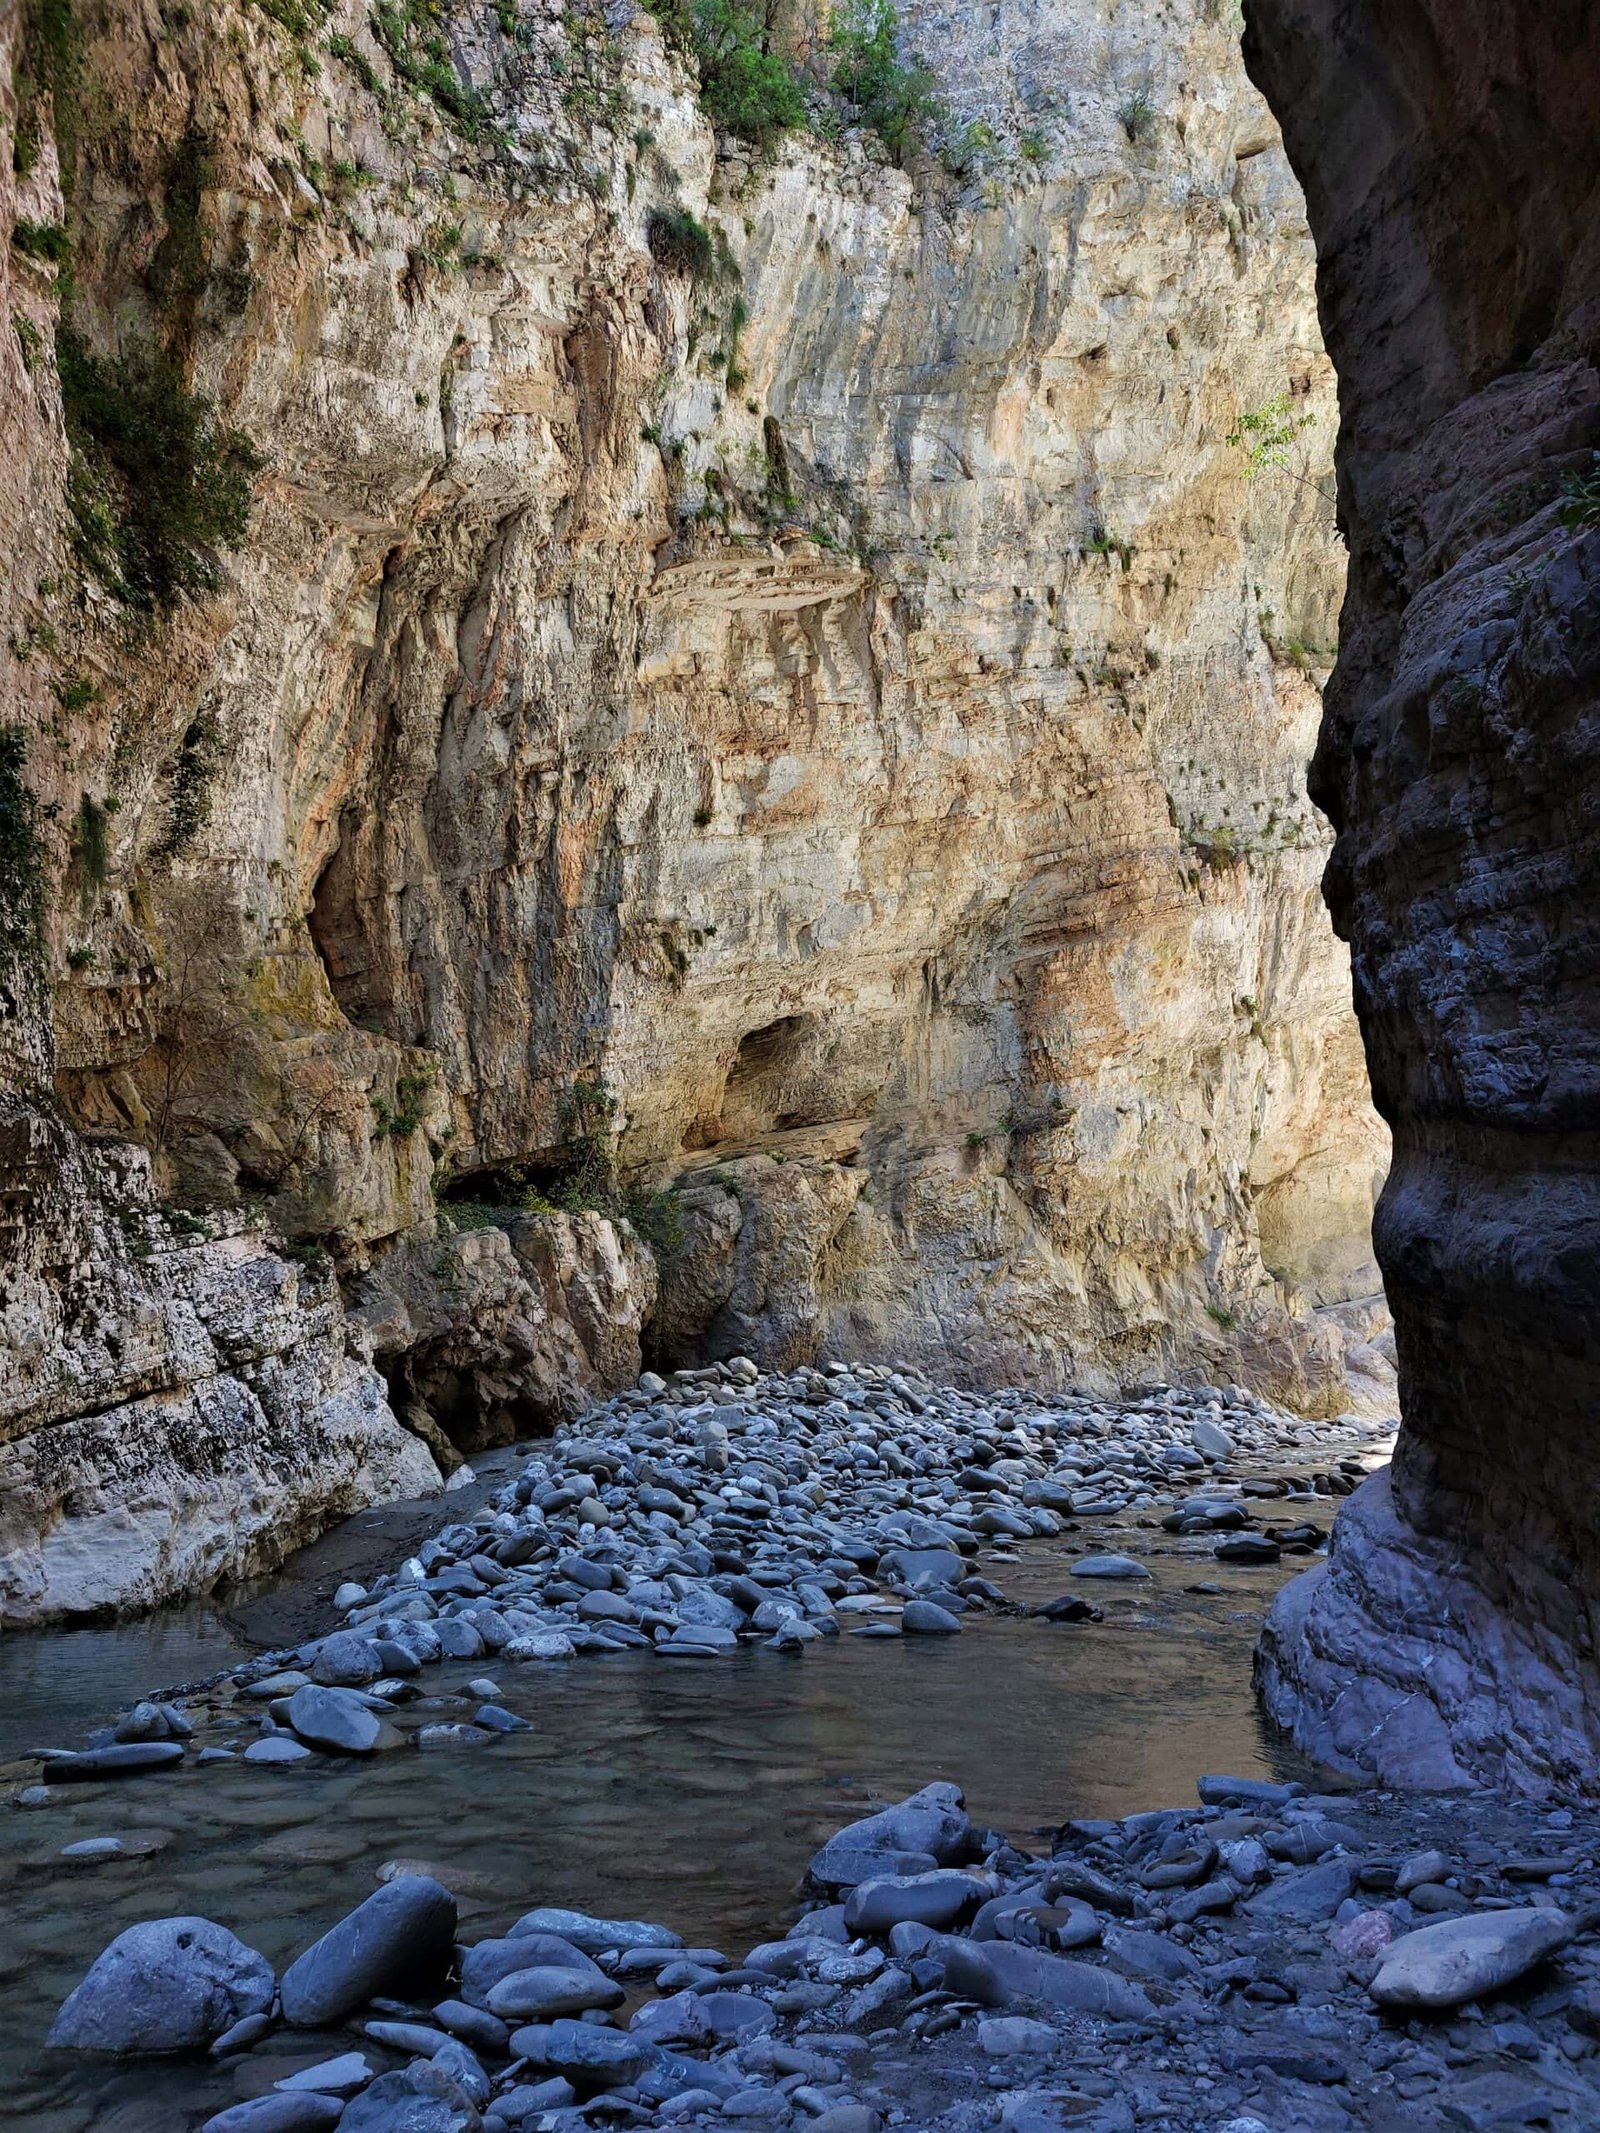 a river running through a narrow canyon